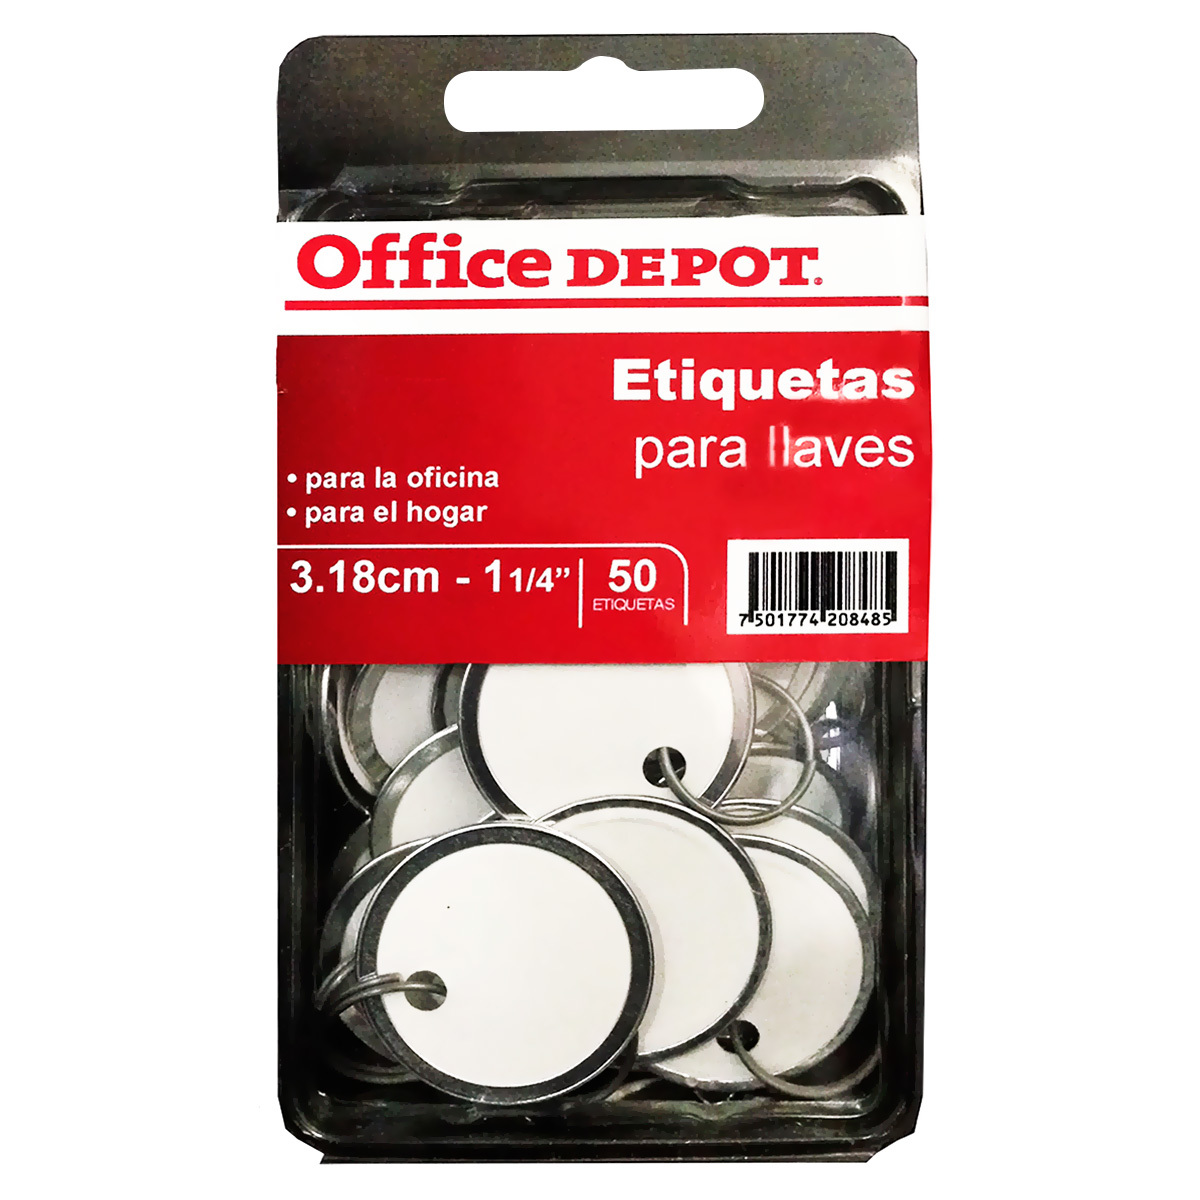 Etiquetas Circulares para Llaves Office Depot  mm 50 piezas | Office  Depot Mexico